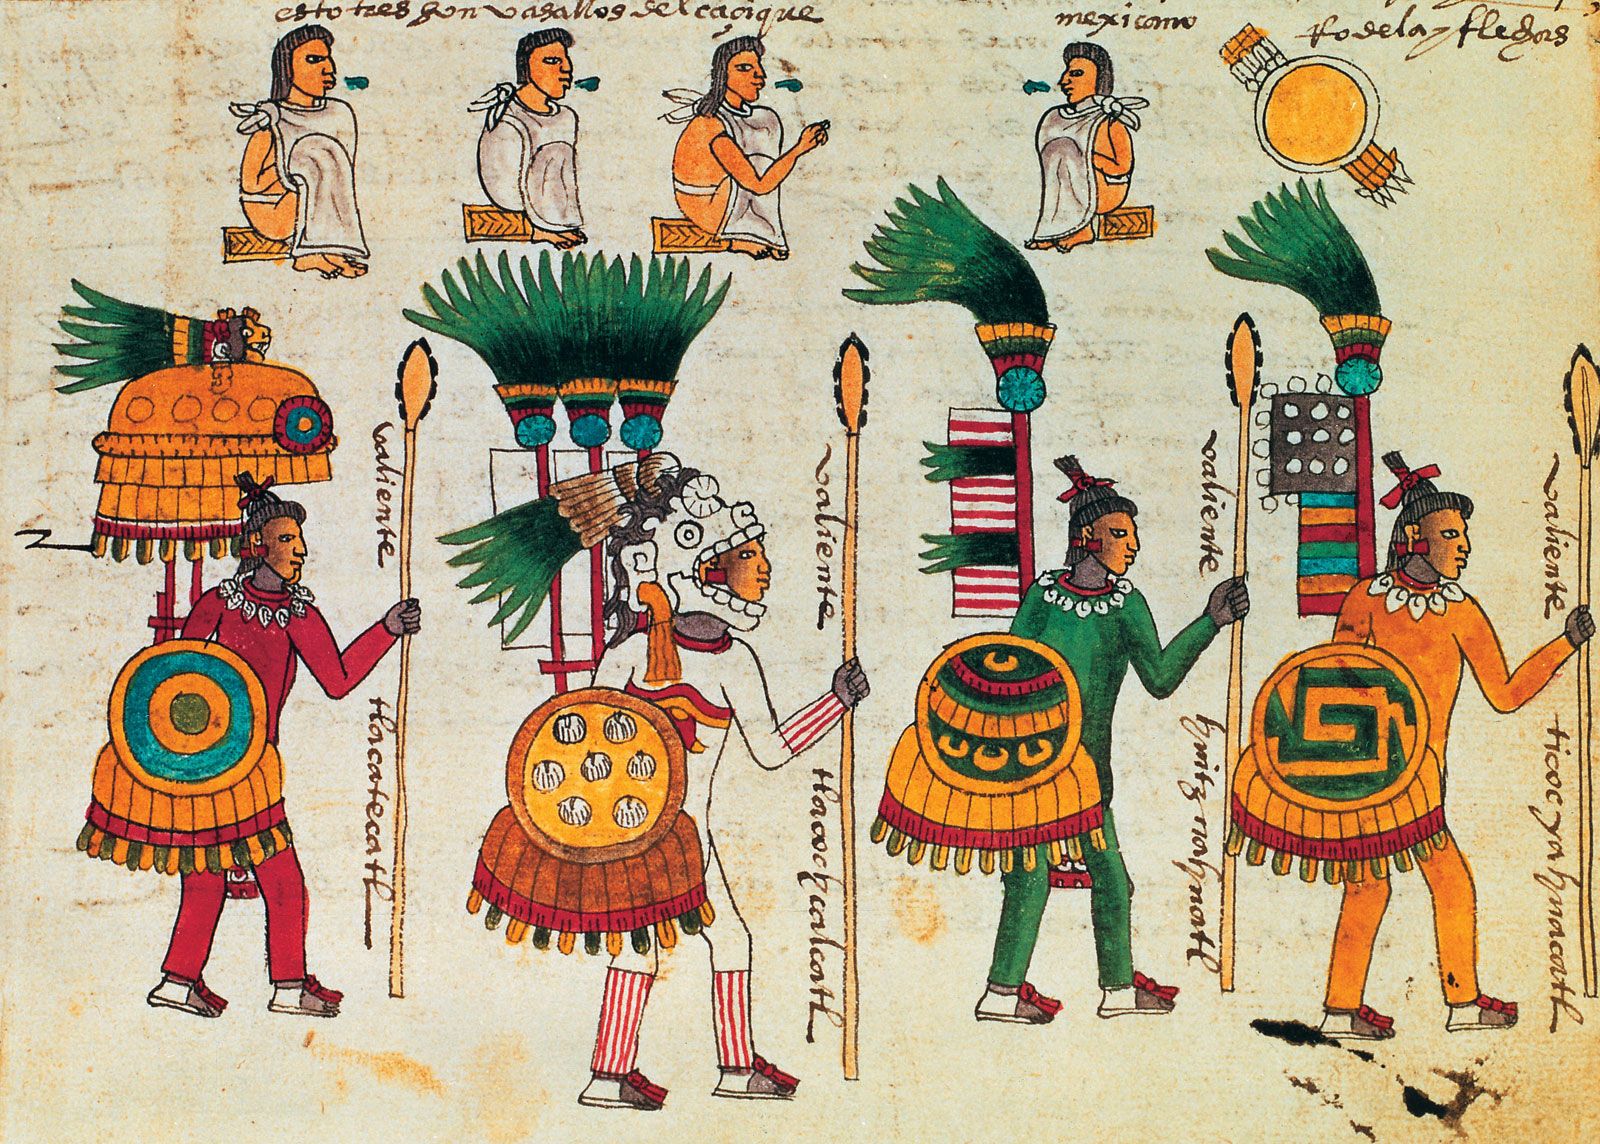 ចក្រភព Aztec: ការកើនឡើងយ៉ាងឆាប់រហ័សនិងការដួលរលំនៃម៉ិកស៊ិក